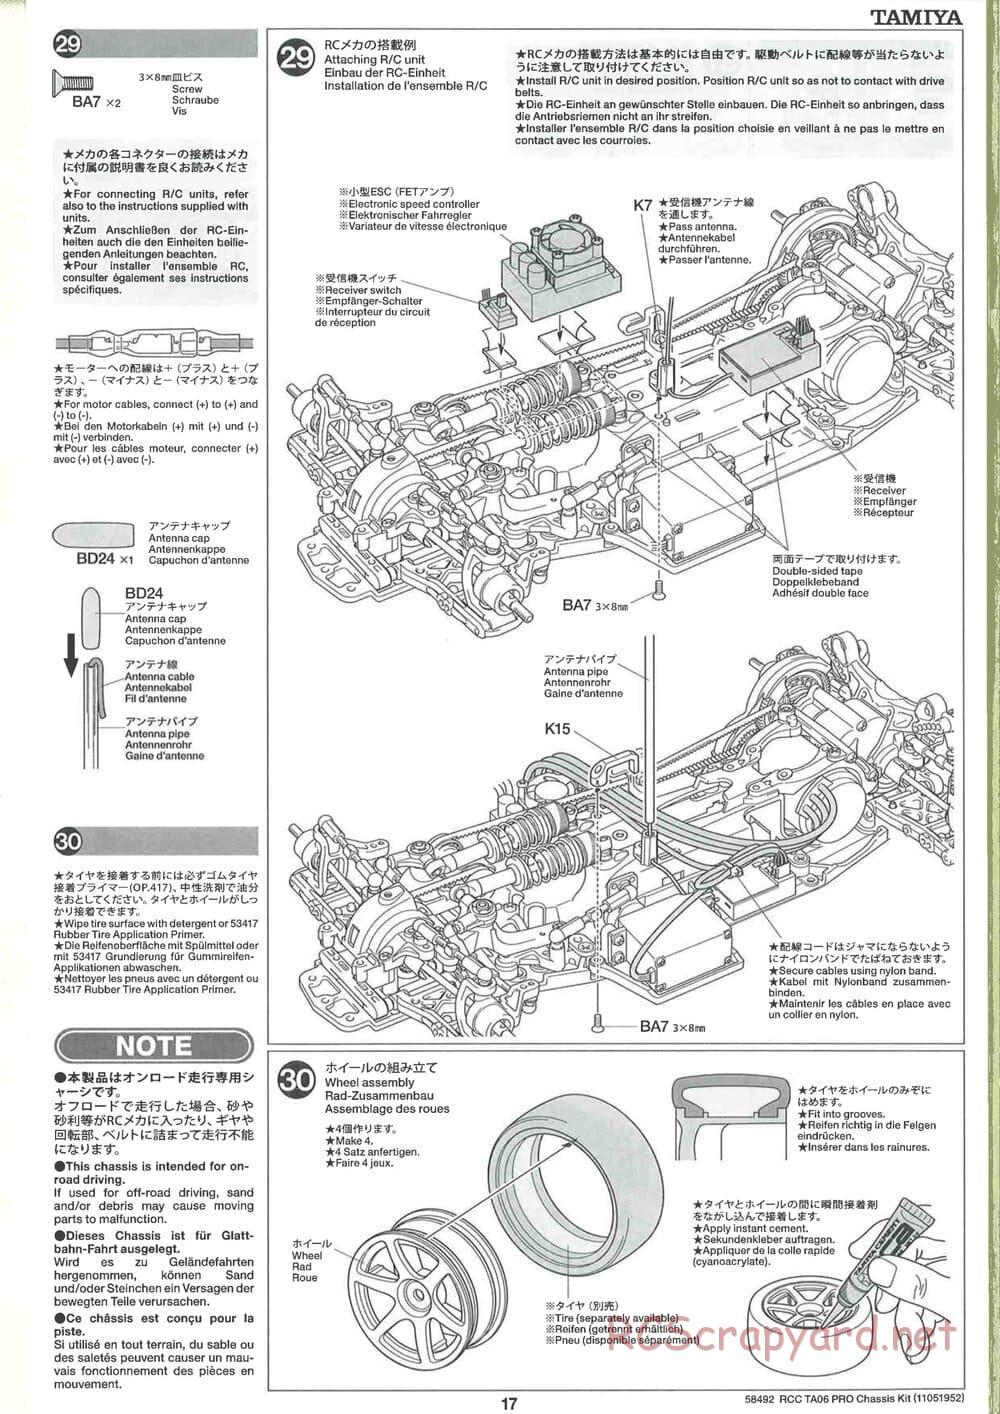 Tamiya - TA06 Pro Chassis - Manual - Page 17